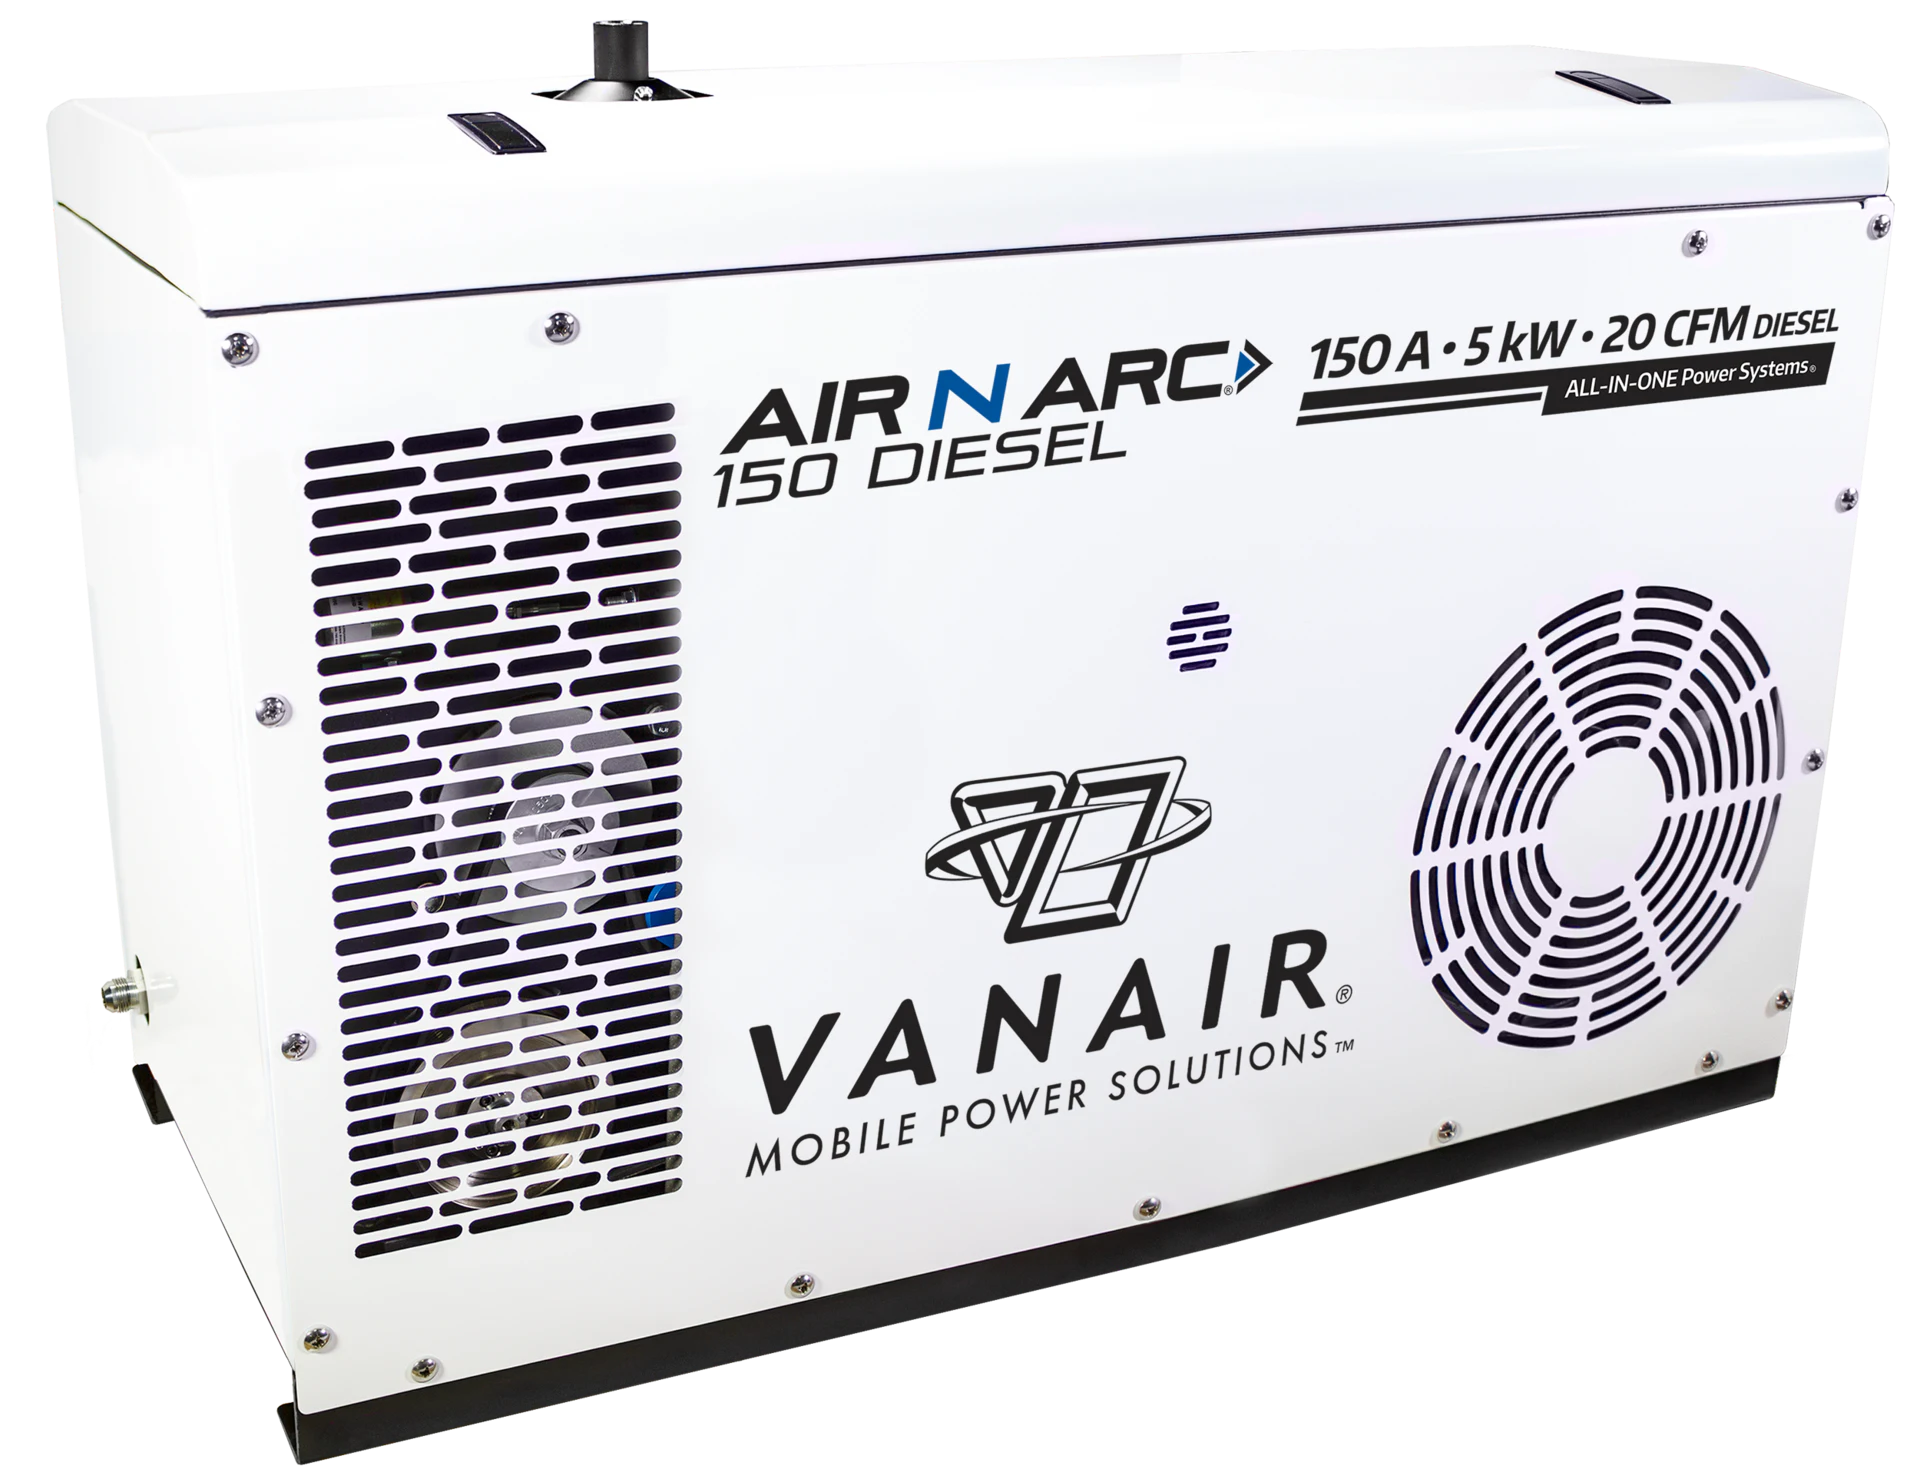 Vanair_Air_N_Arc_150_Diesel_Product_Image.5daa3526c6057